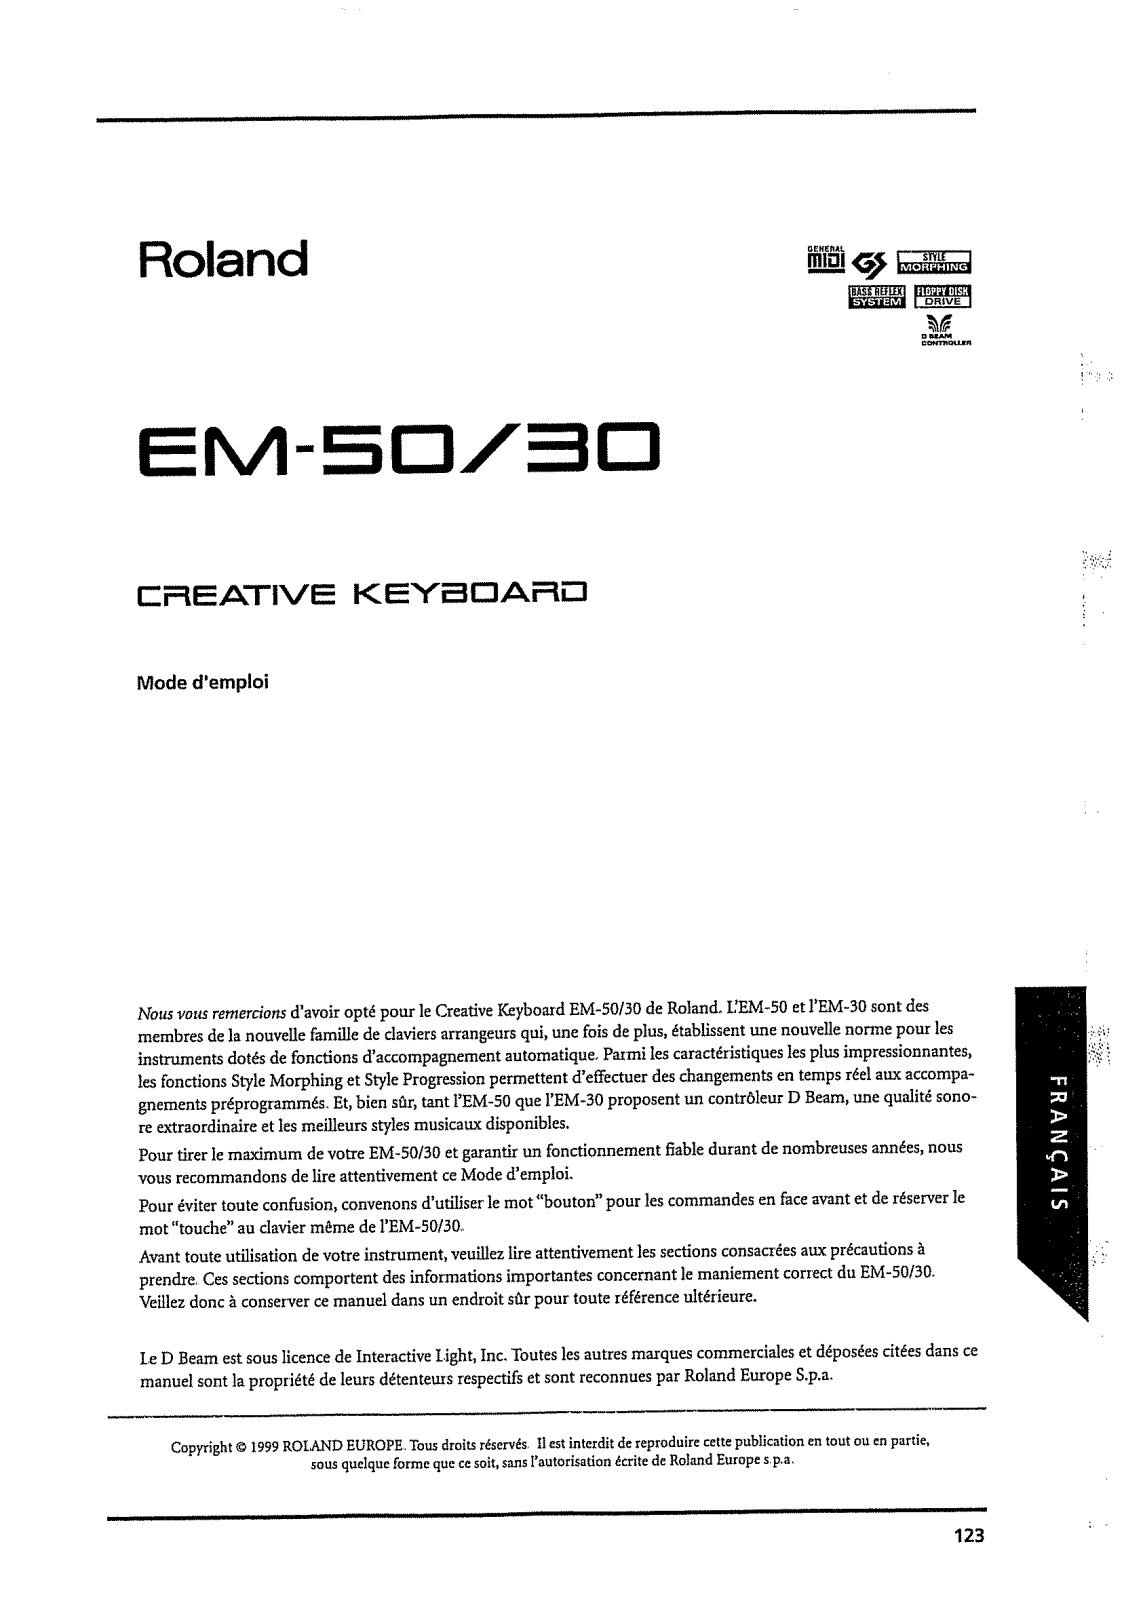 ROLAND EM-50 User Manual